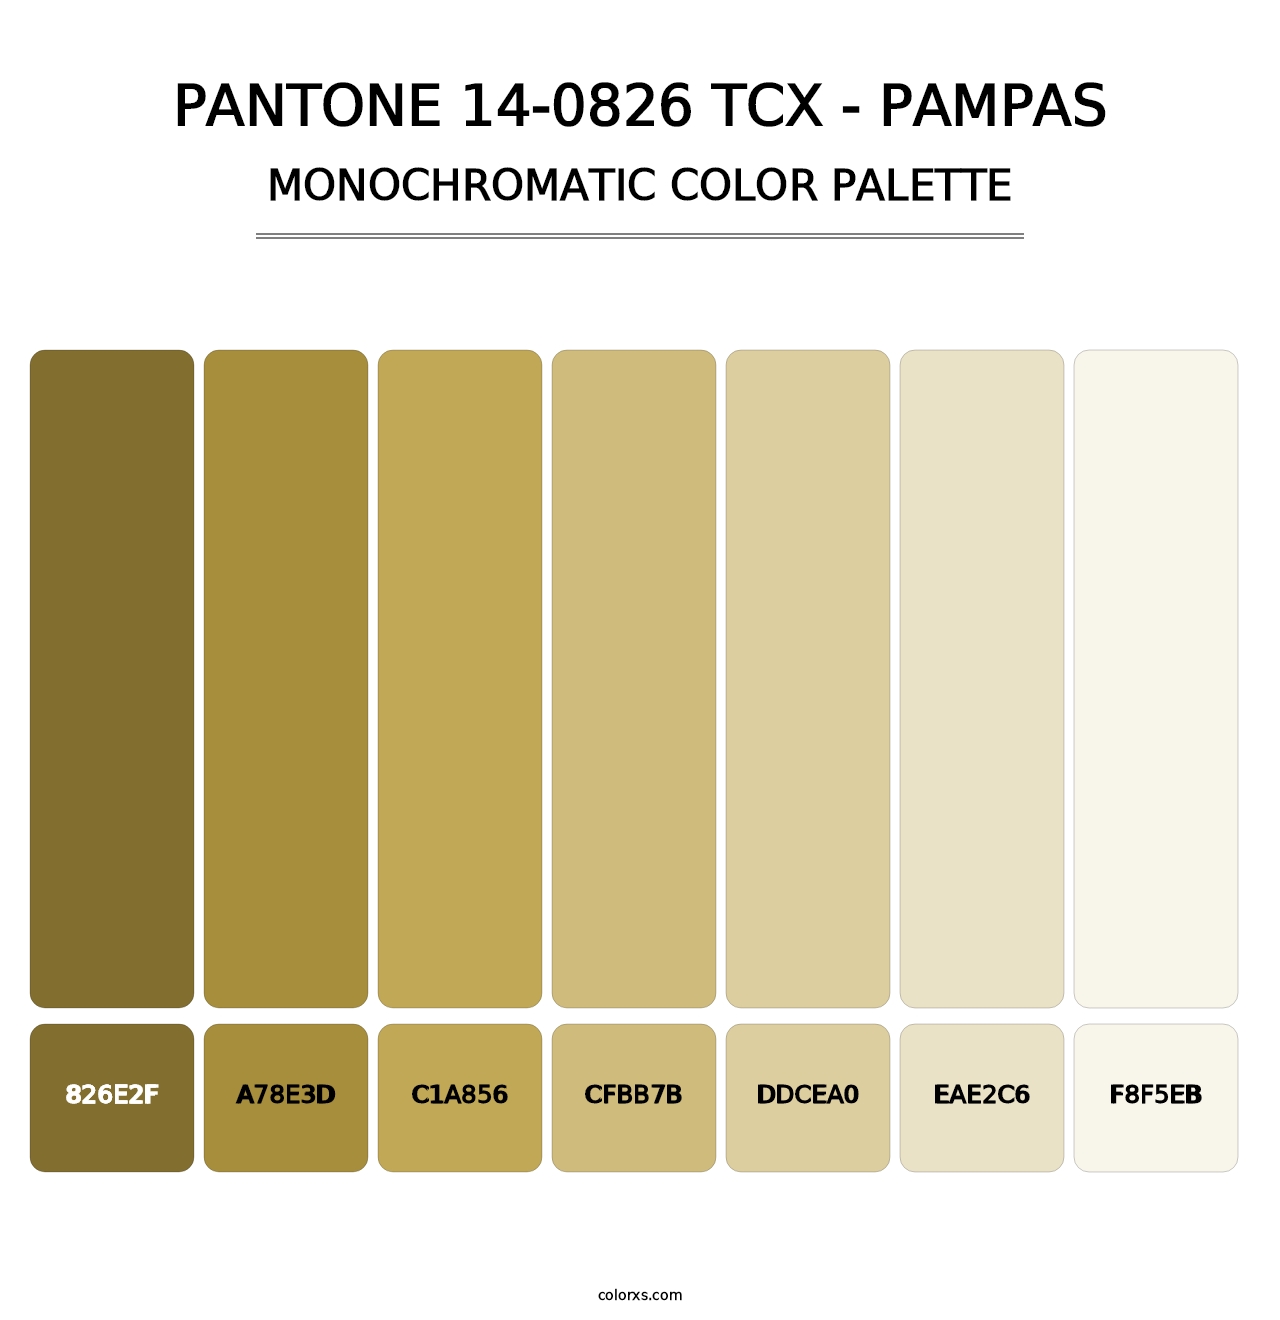 PANTONE 14-0826 TCX - Pampas - Monochromatic Color Palette